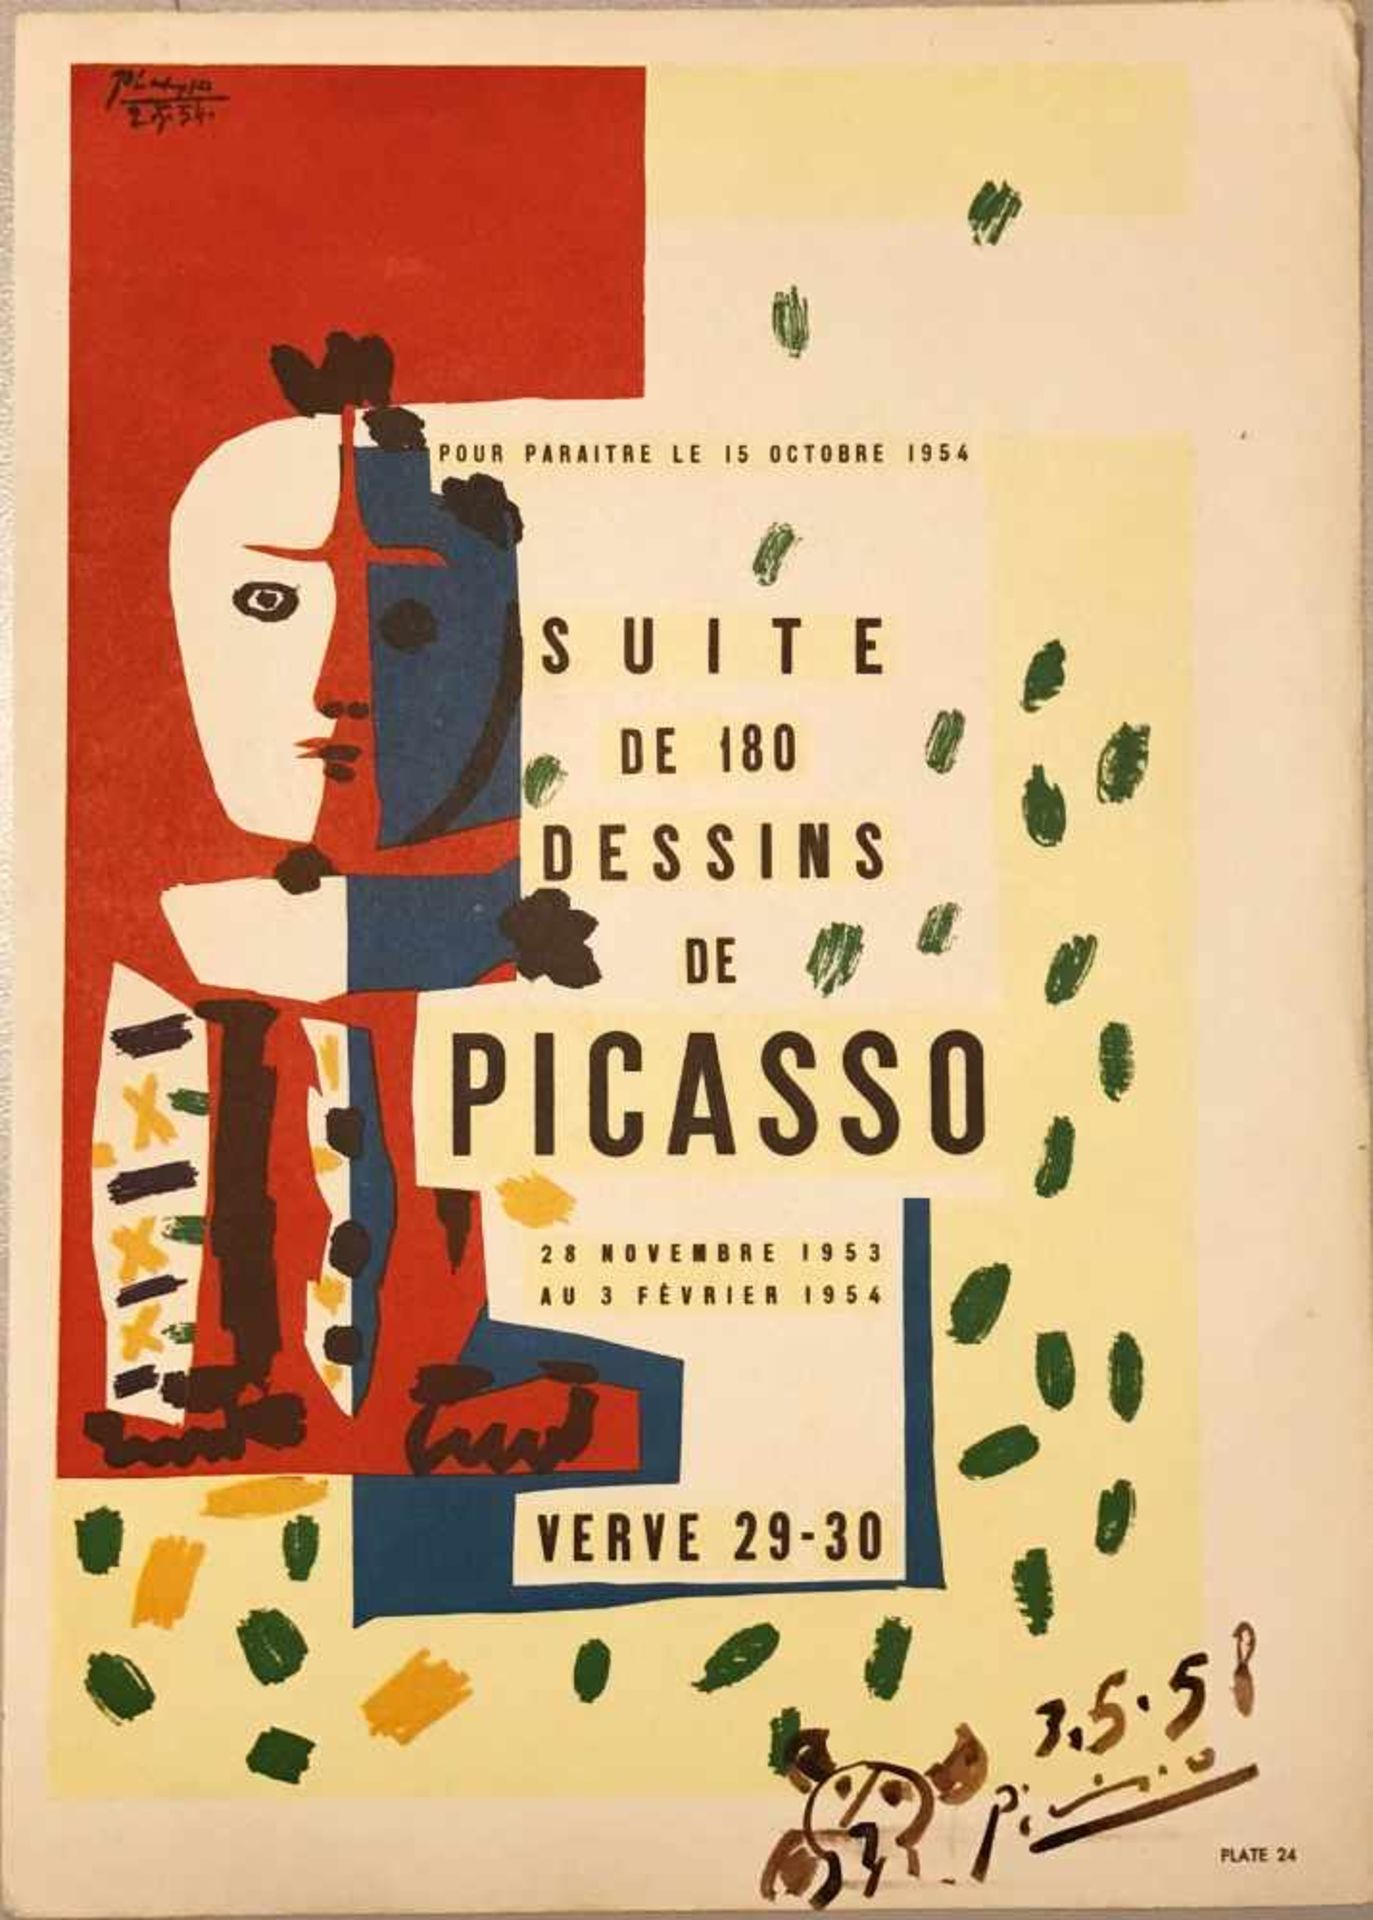 Pablo Picasso, "Suite de 180 dessins de Picasso 28 Novembre 1953 au 3 Février 1954". Das Plakat,